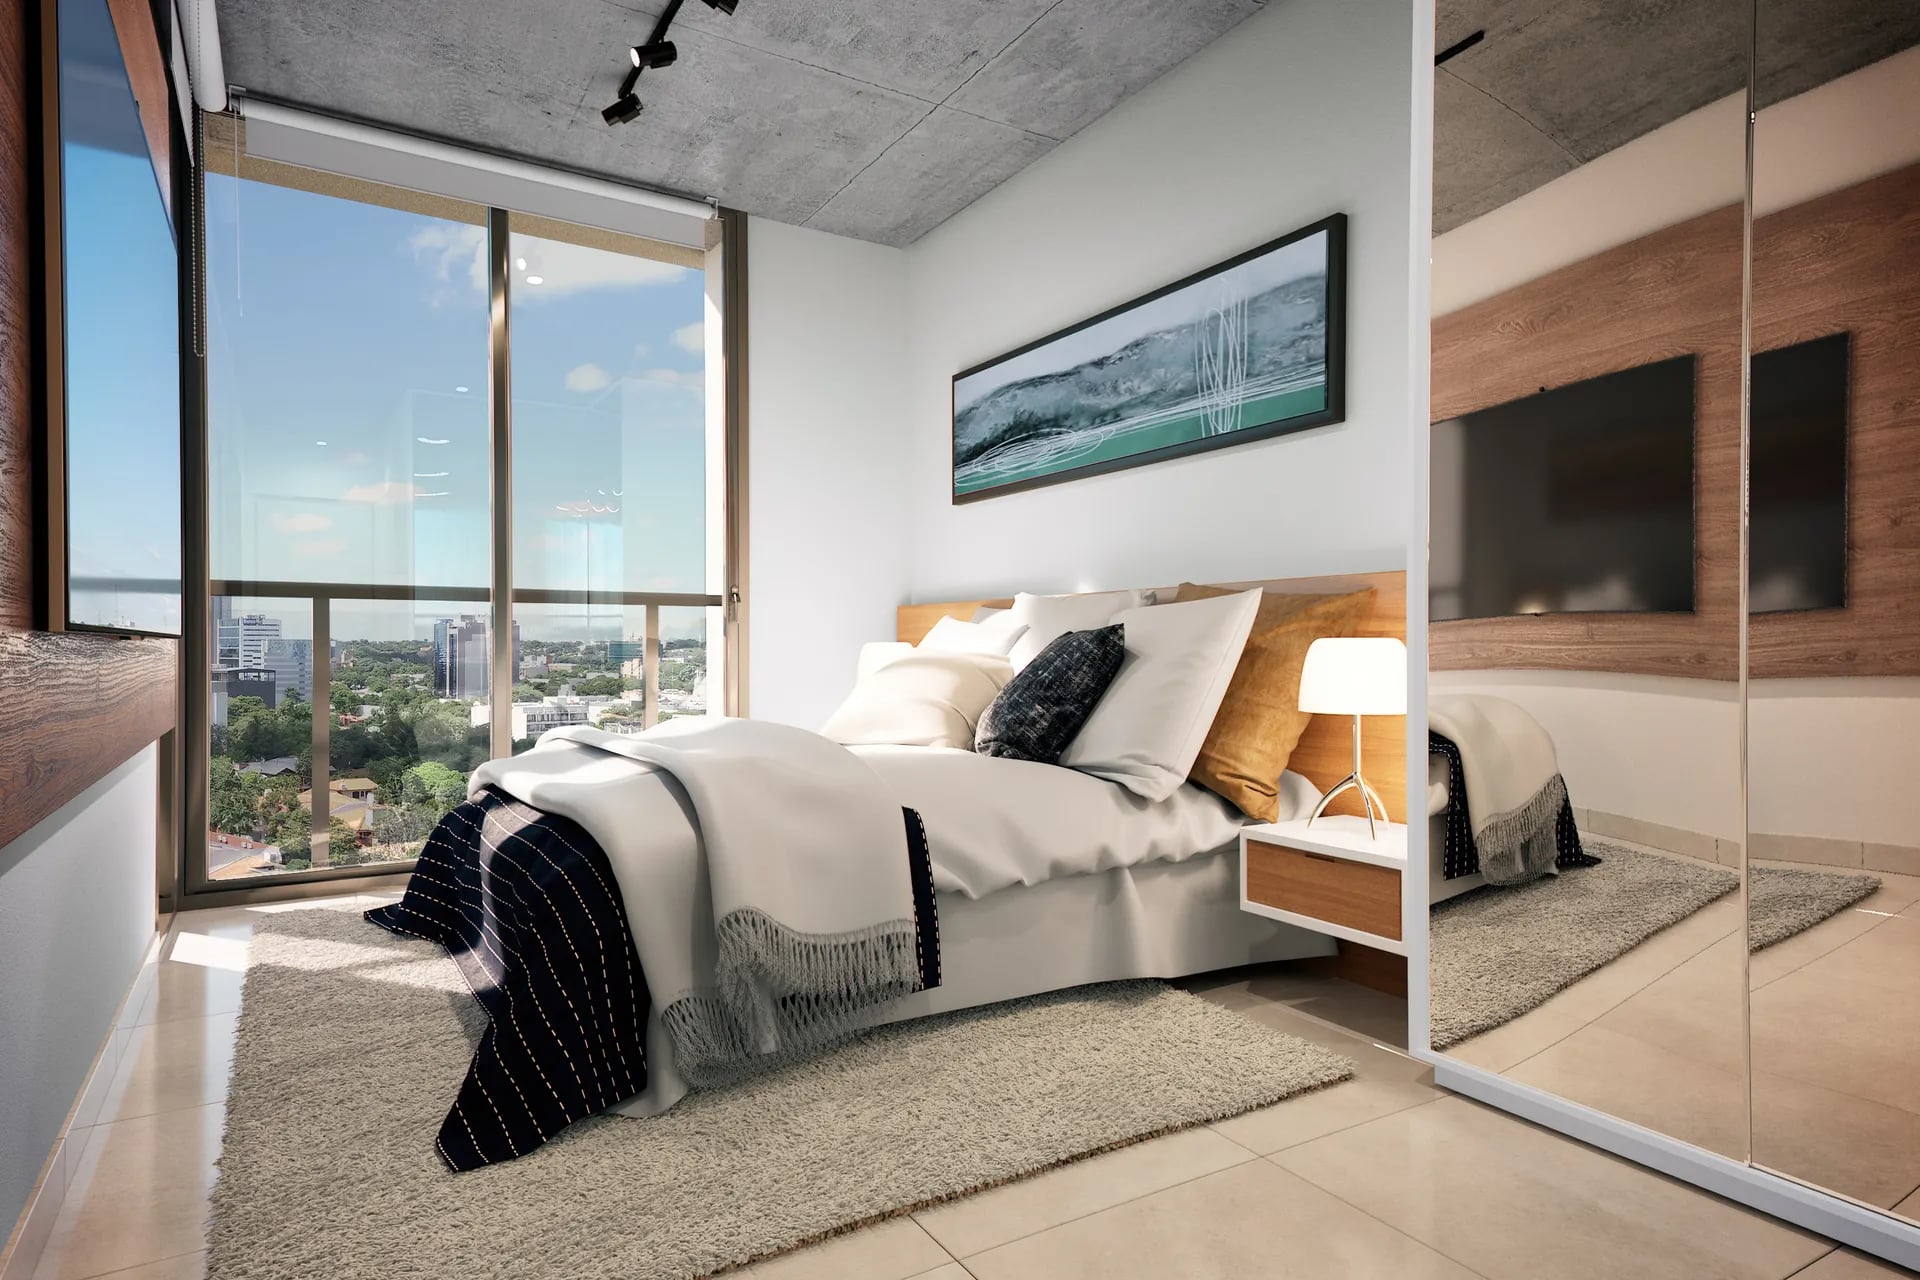 Los dormitorios tendrán ambientes versátiles, luminosos, flexibles y completamente equipados.